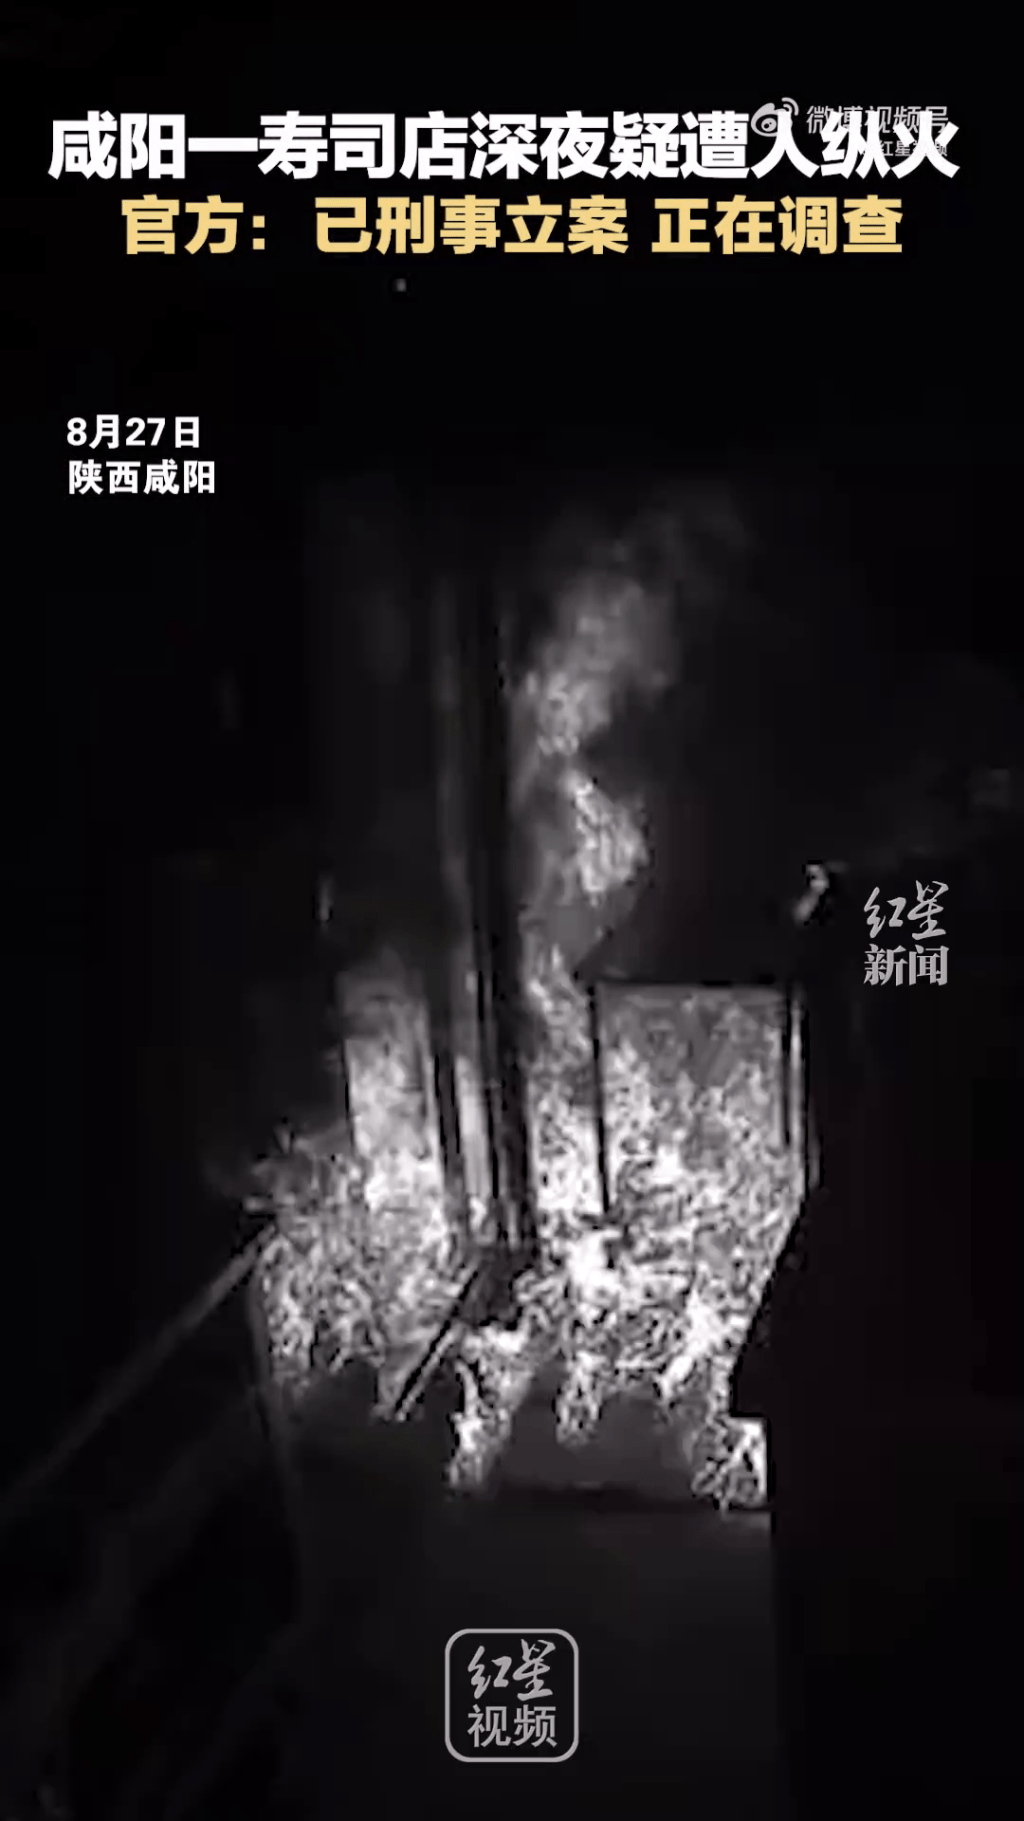 寿司店门口突然燃起大火，闭路电视画面也白化了。